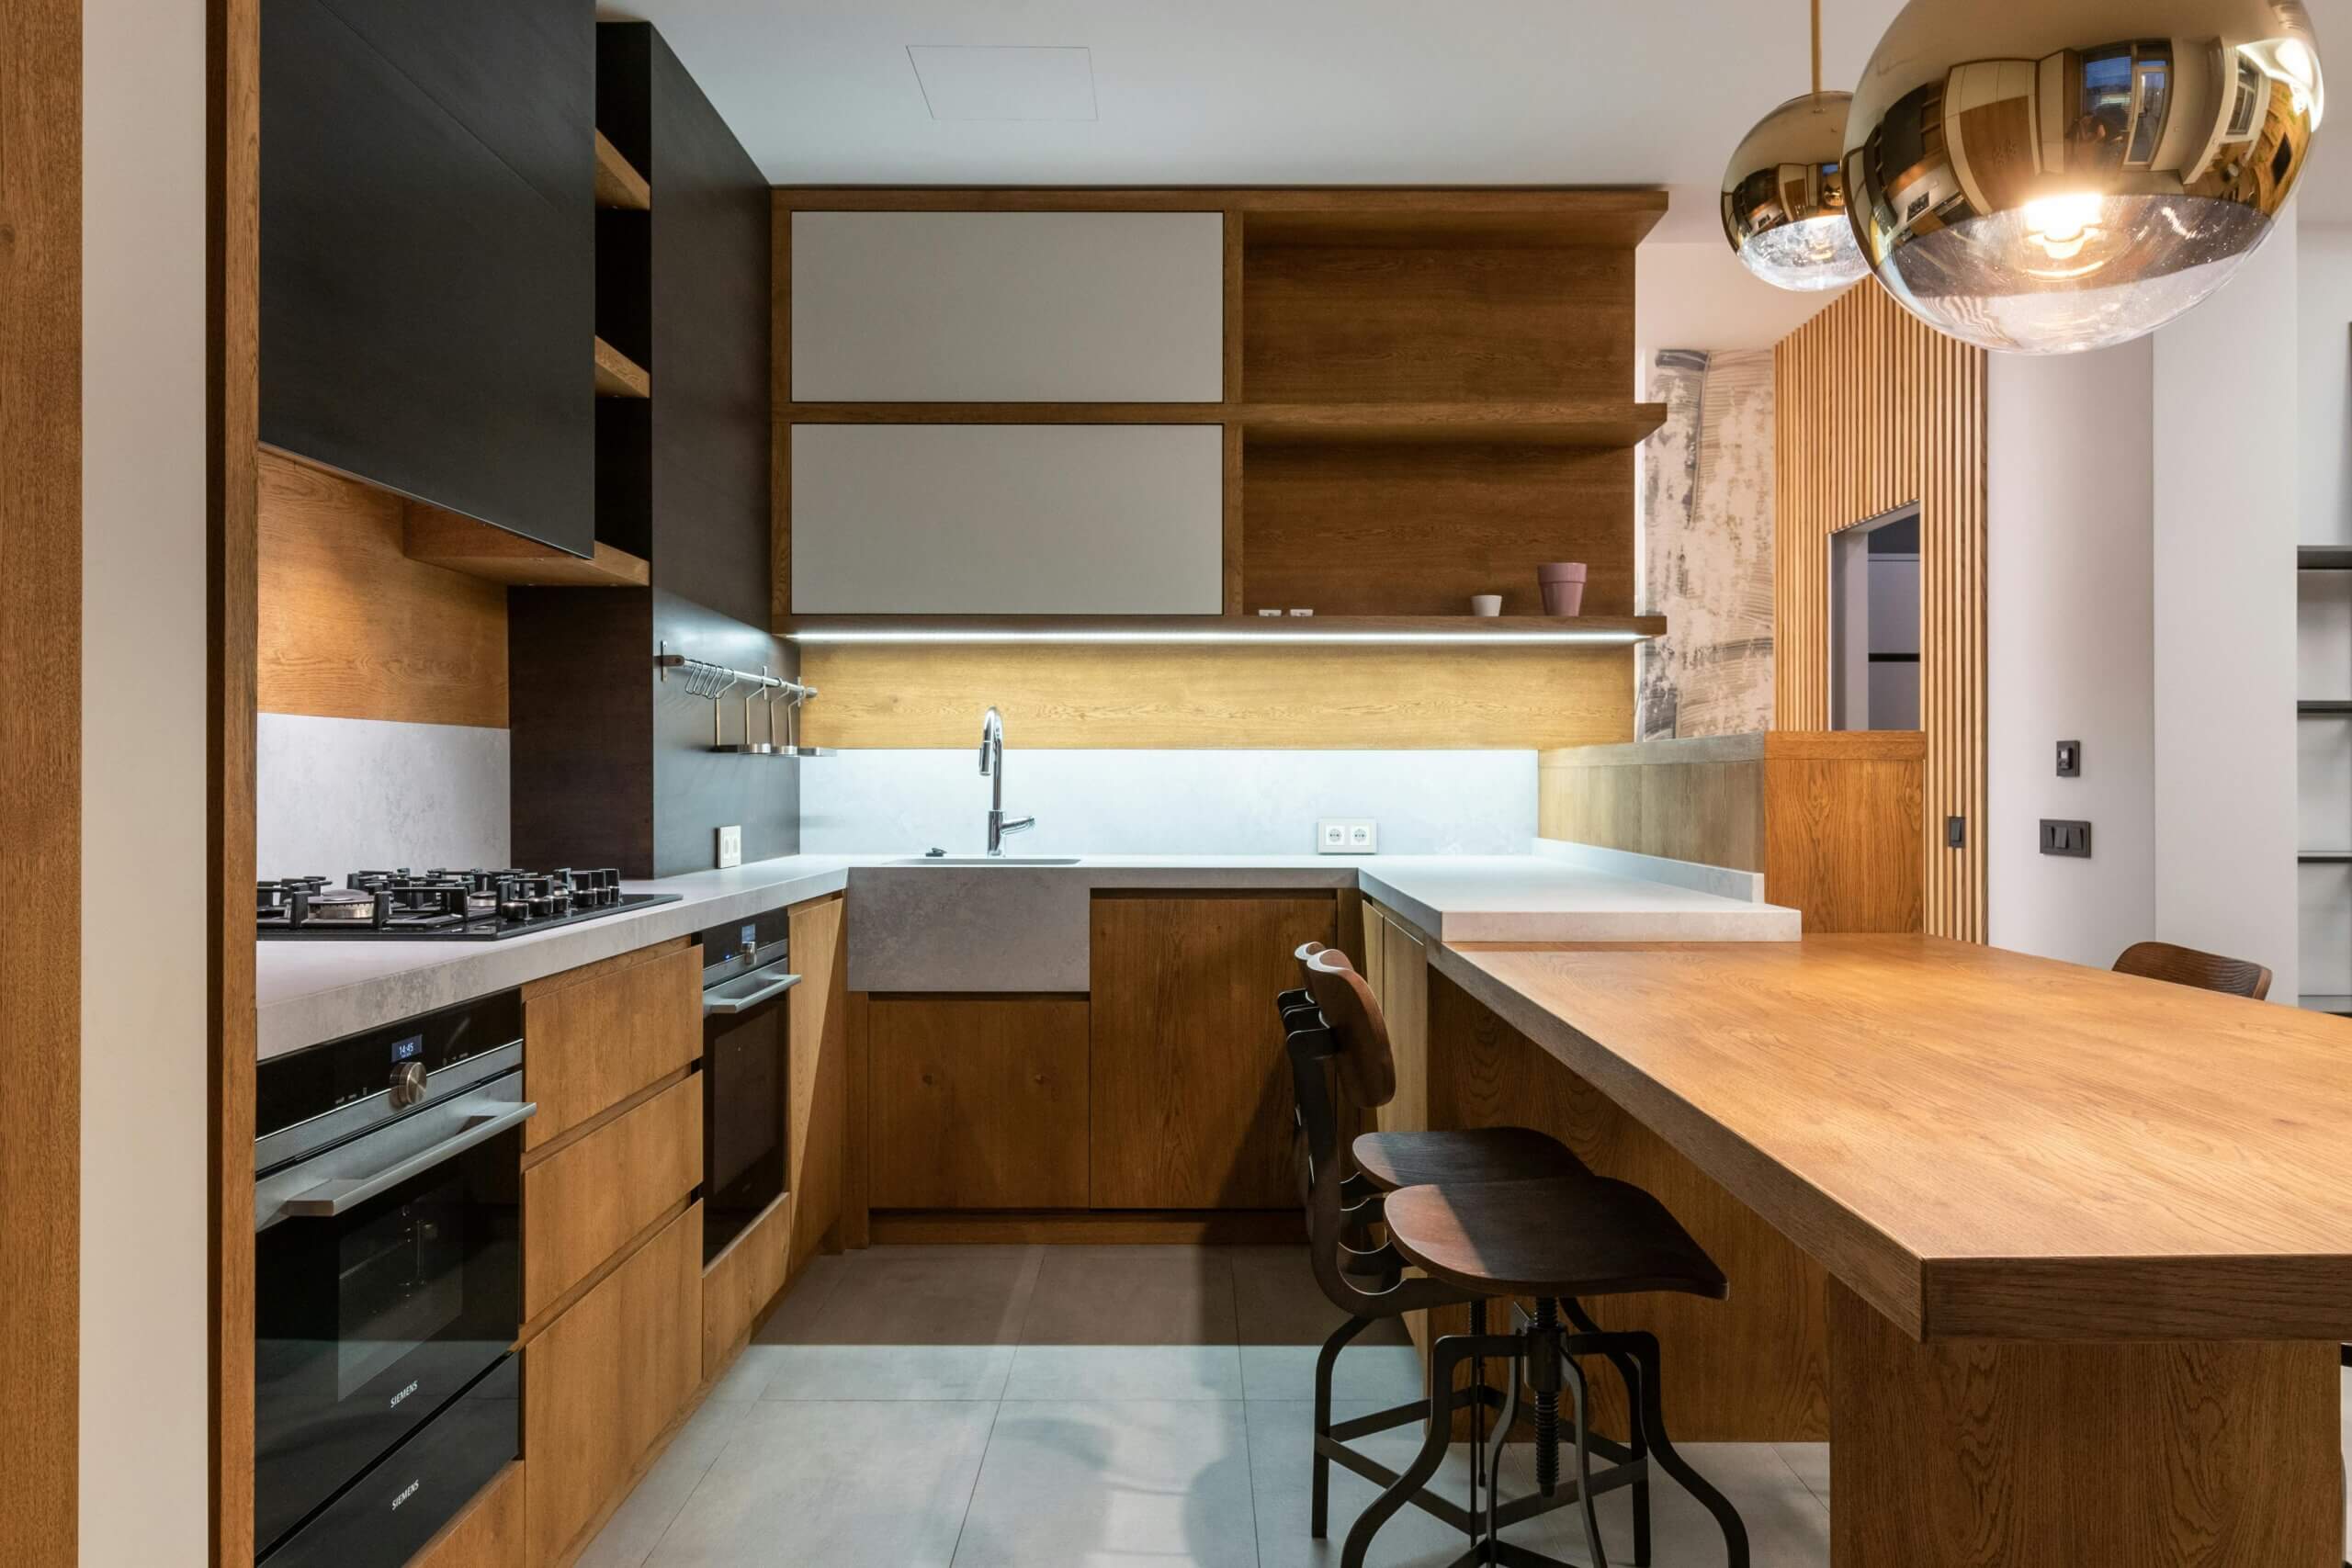 Efficient kitchen layout